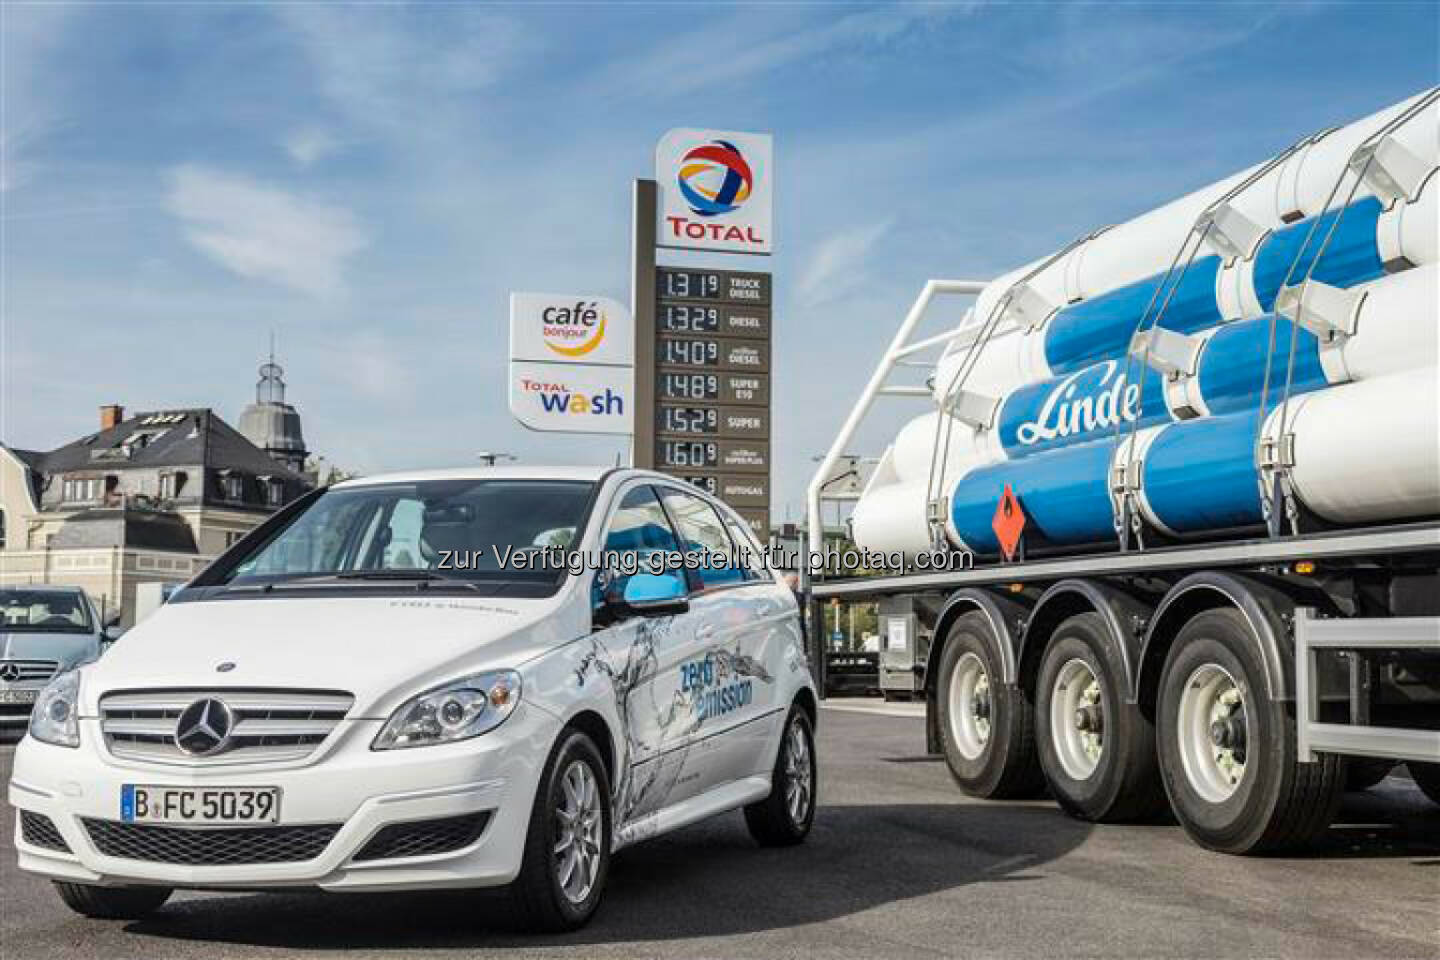 Daimler: Der Automobilhersteller Daimler und das Gase- und Engineering-Unternehmen Linde werden noch in diesem Jahr beginnen, gemeinsam mit den Mineralölunternehmen Total, OMV, Avia und Hoyer die Anzahl an Wasserstofftankstellen in Deutschland deutlich zu erhöhen. Die beiden Unternehmen investieren dabei jeweils rund 10 Mio. EUR in jeweils zehn Tankstellen.